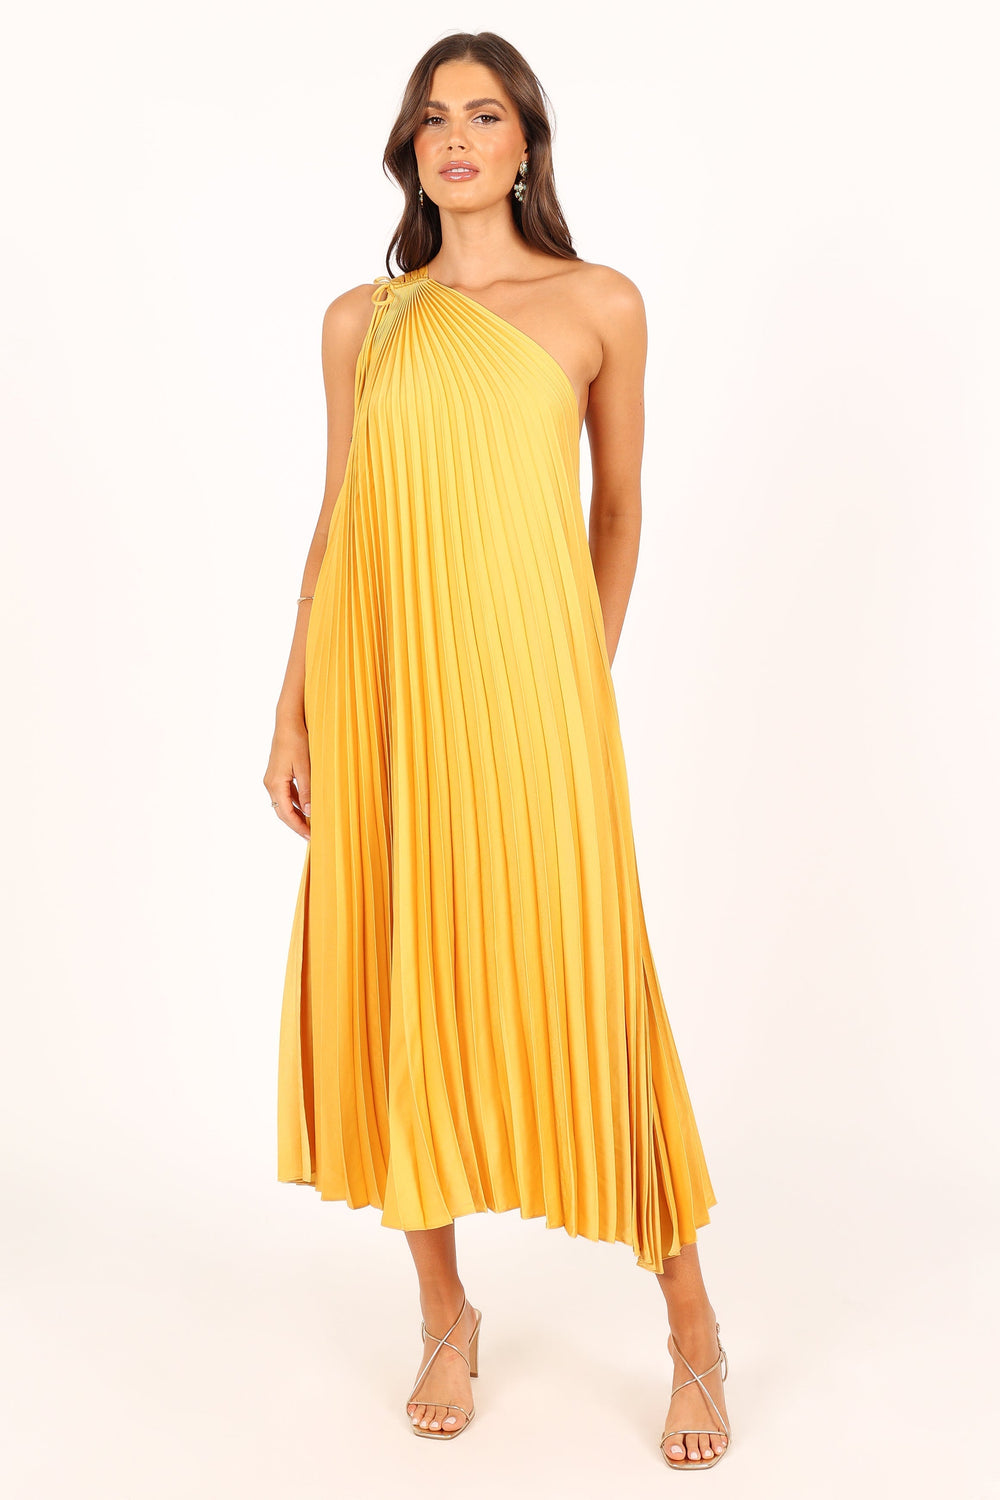 Cali One Shoulder Midi Dress - Saffron - Petal & Pup USA